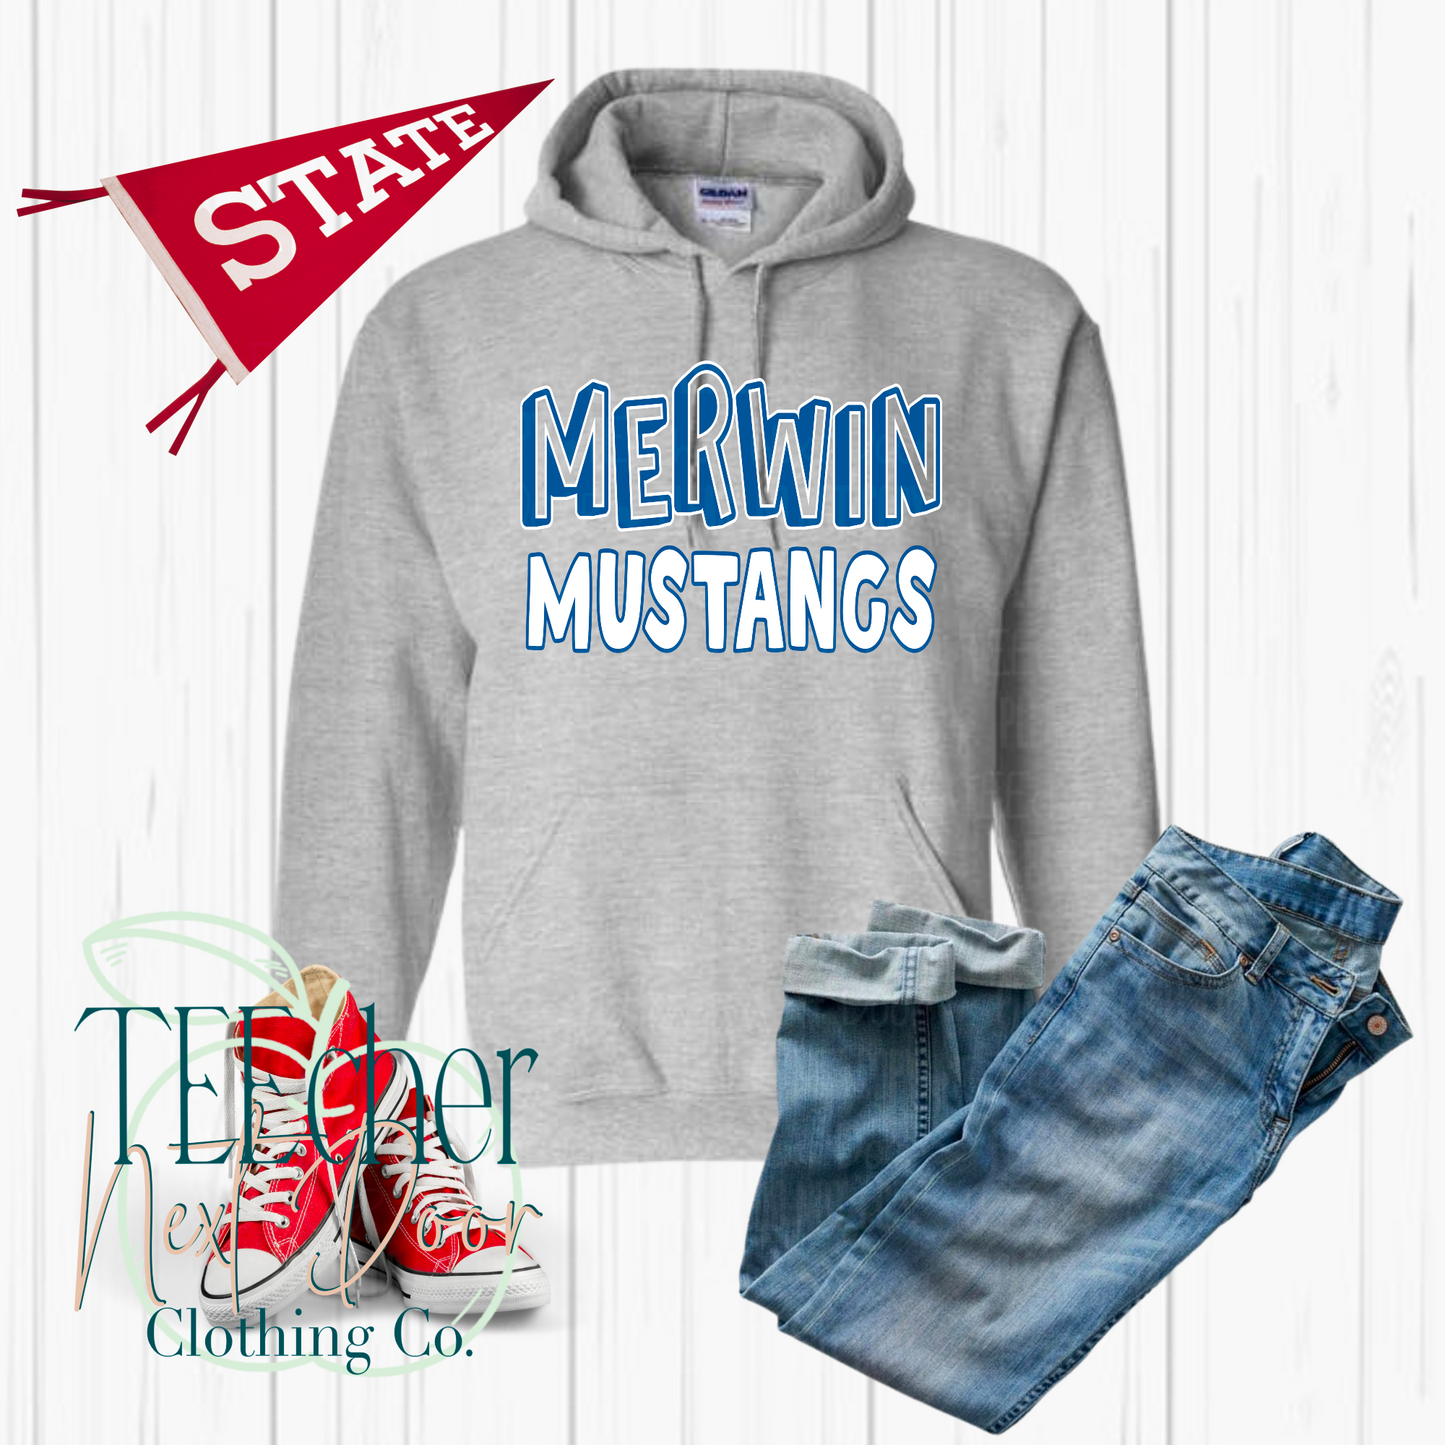 Merwin Mustangs Fun and Simple